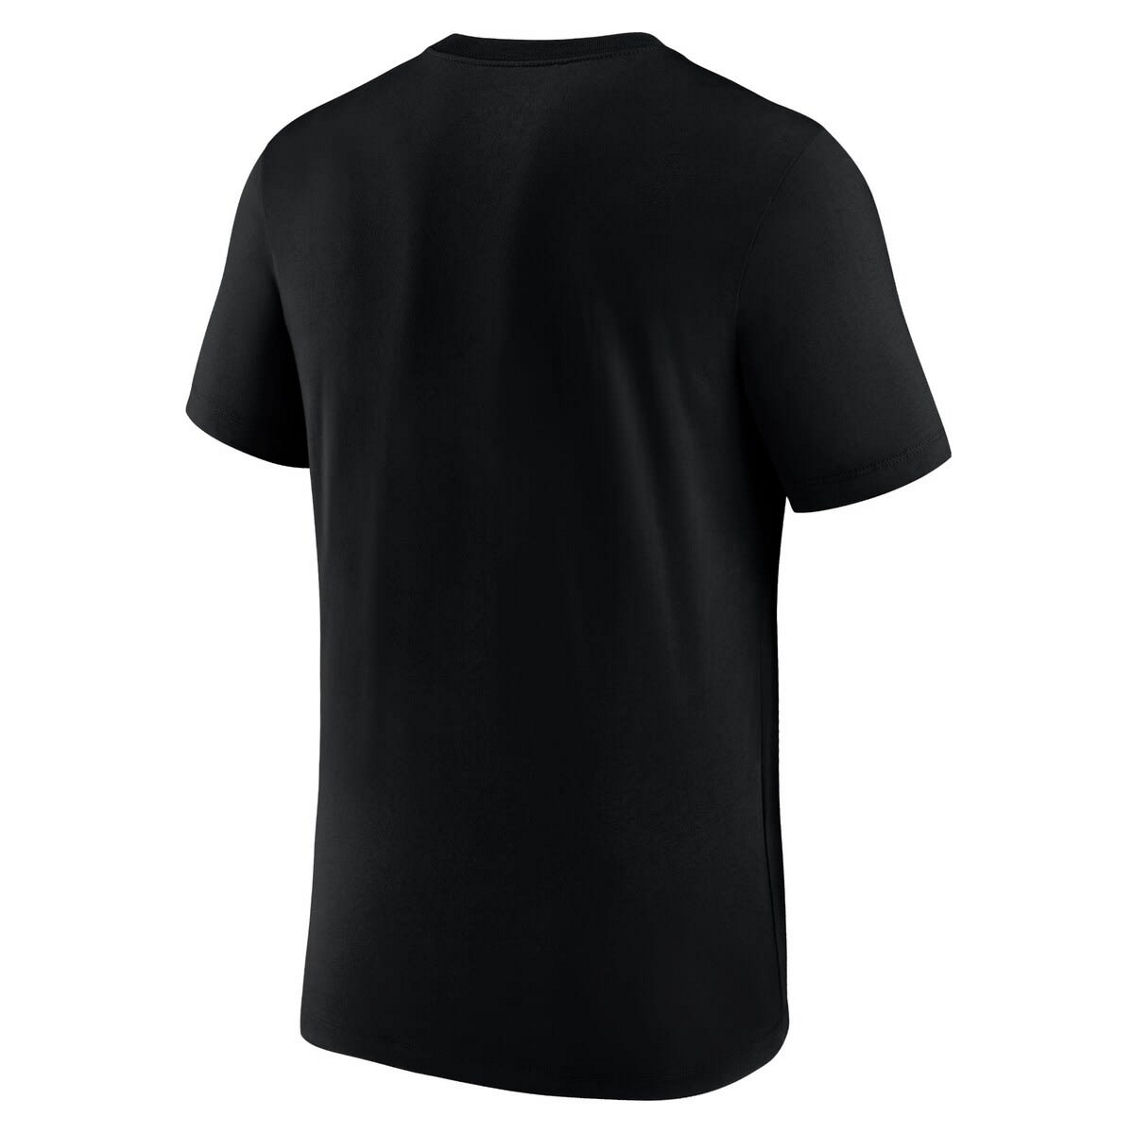 Nike Men's Black Liverpool Futura T-Shirt - Image 4 of 4